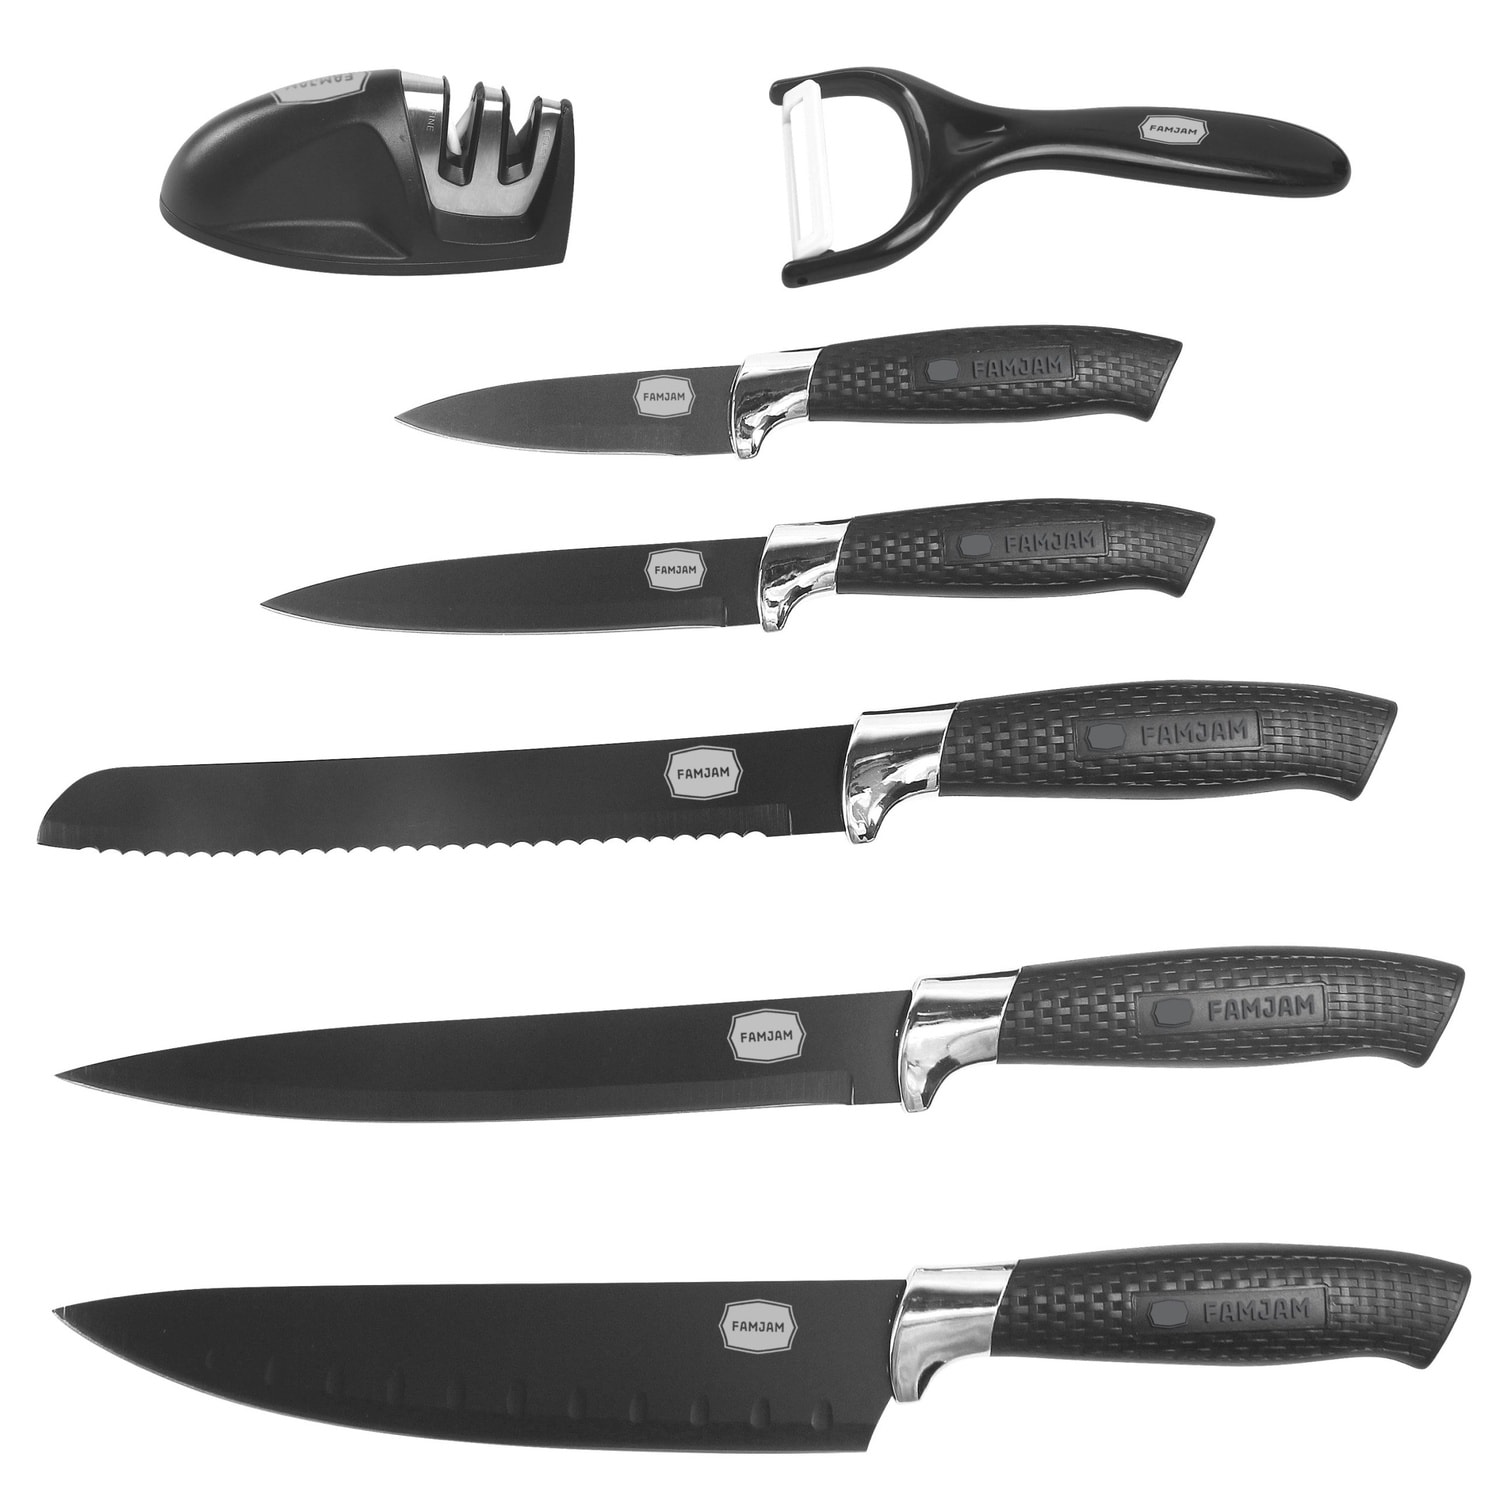 8 Delar Knivset med Ställ för Köket - Köksknivar Skalare och Knivslip Set (53 av 77)